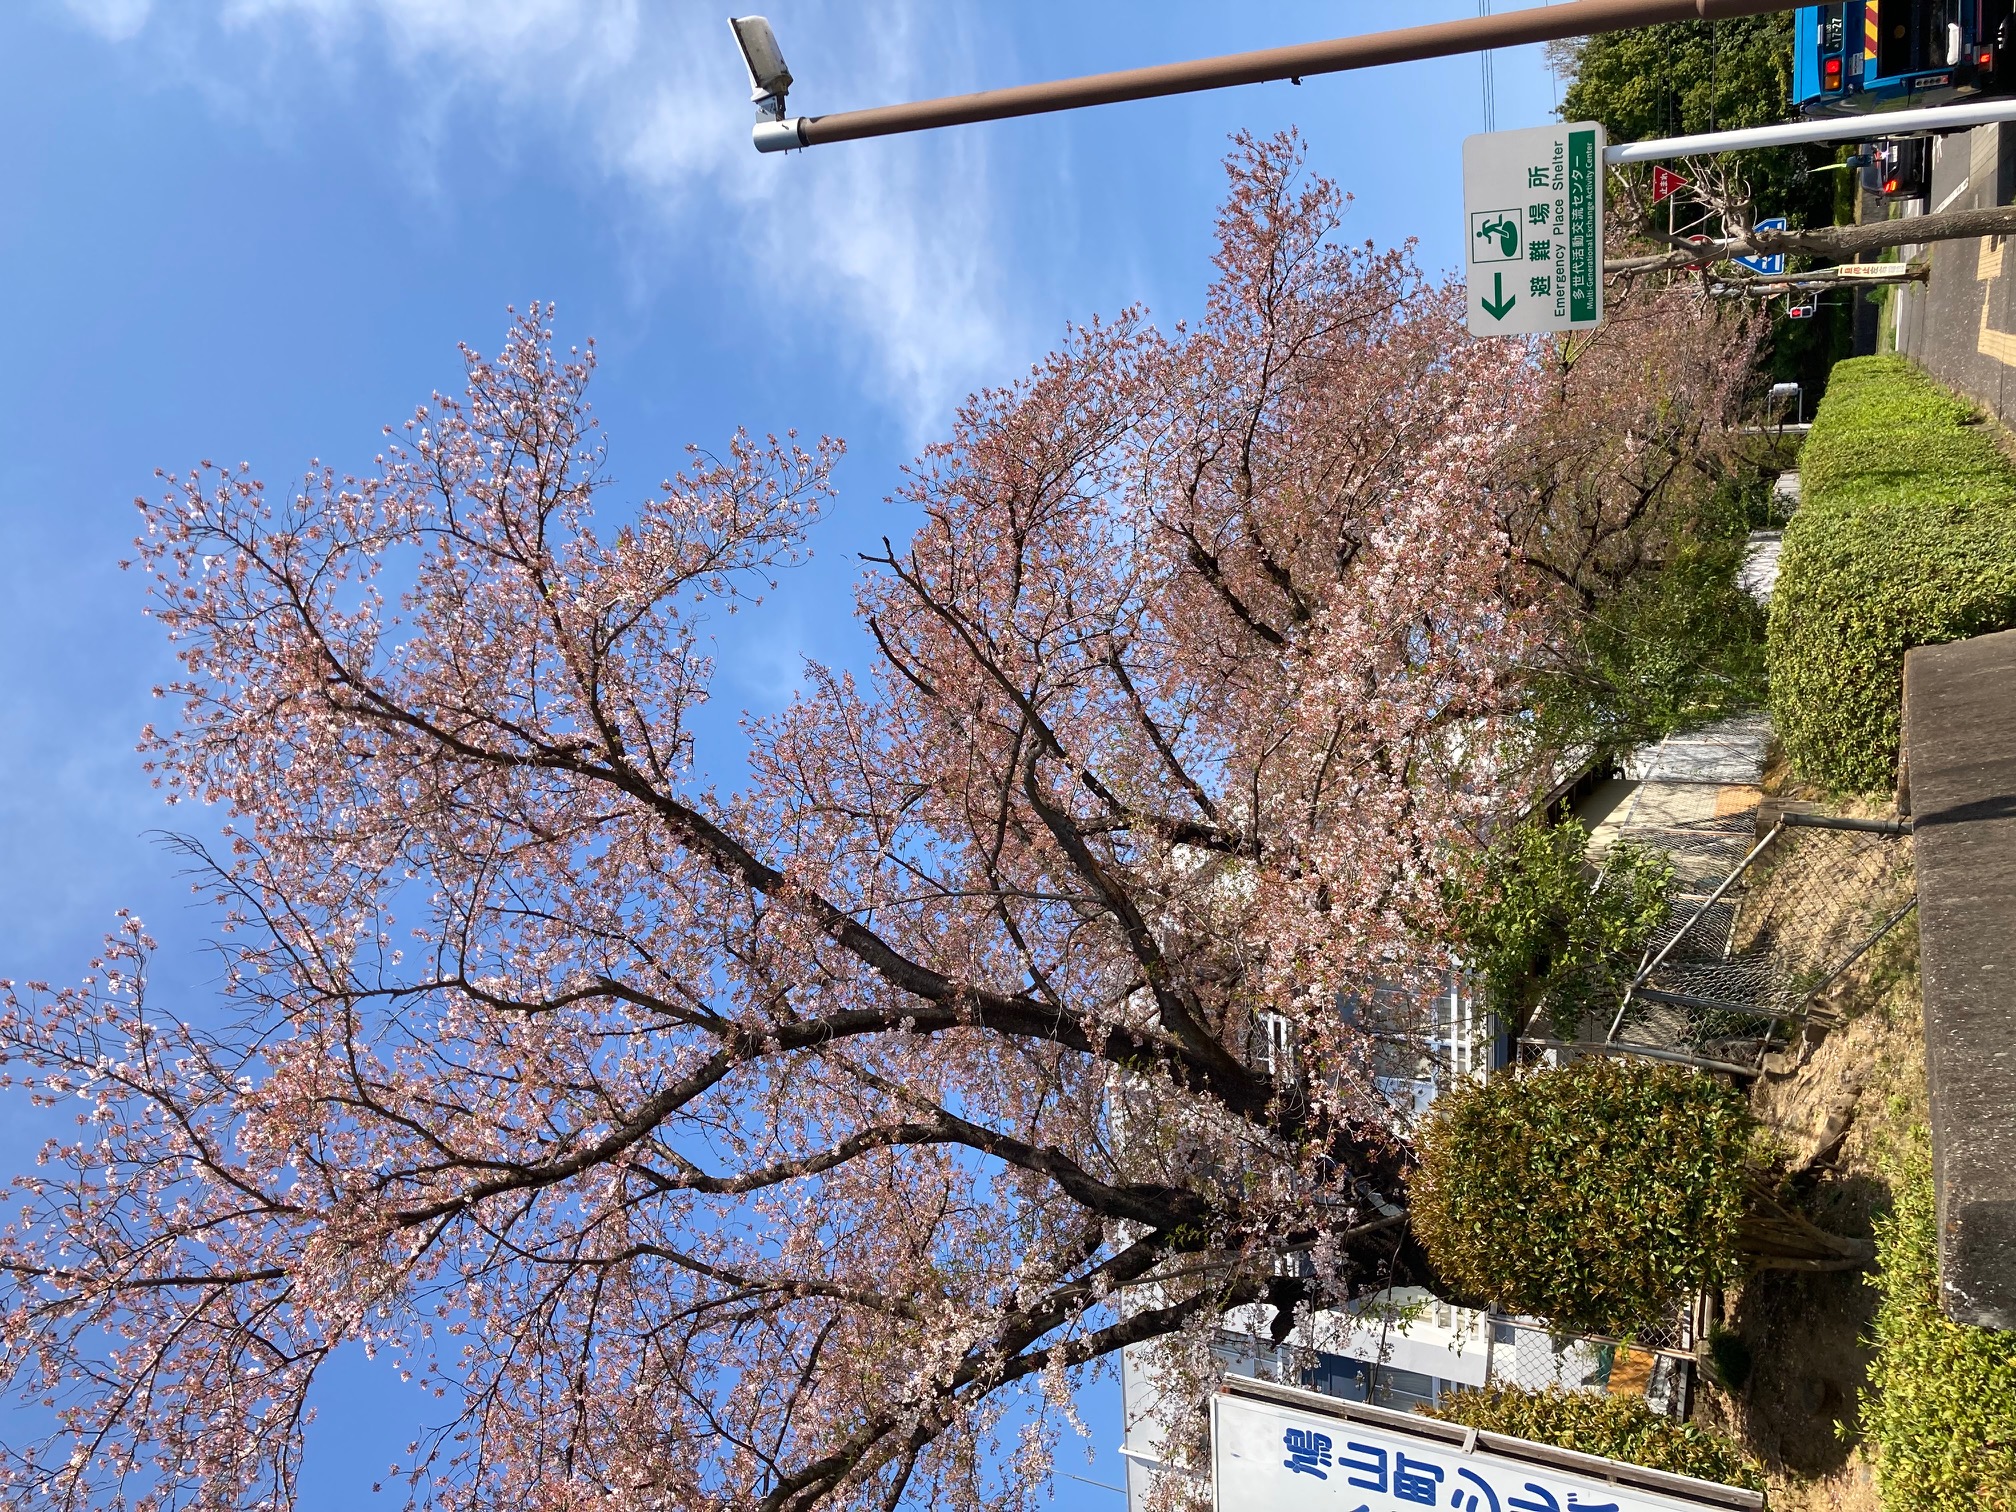 多世代活動交流センター前の桜を拡大撮影